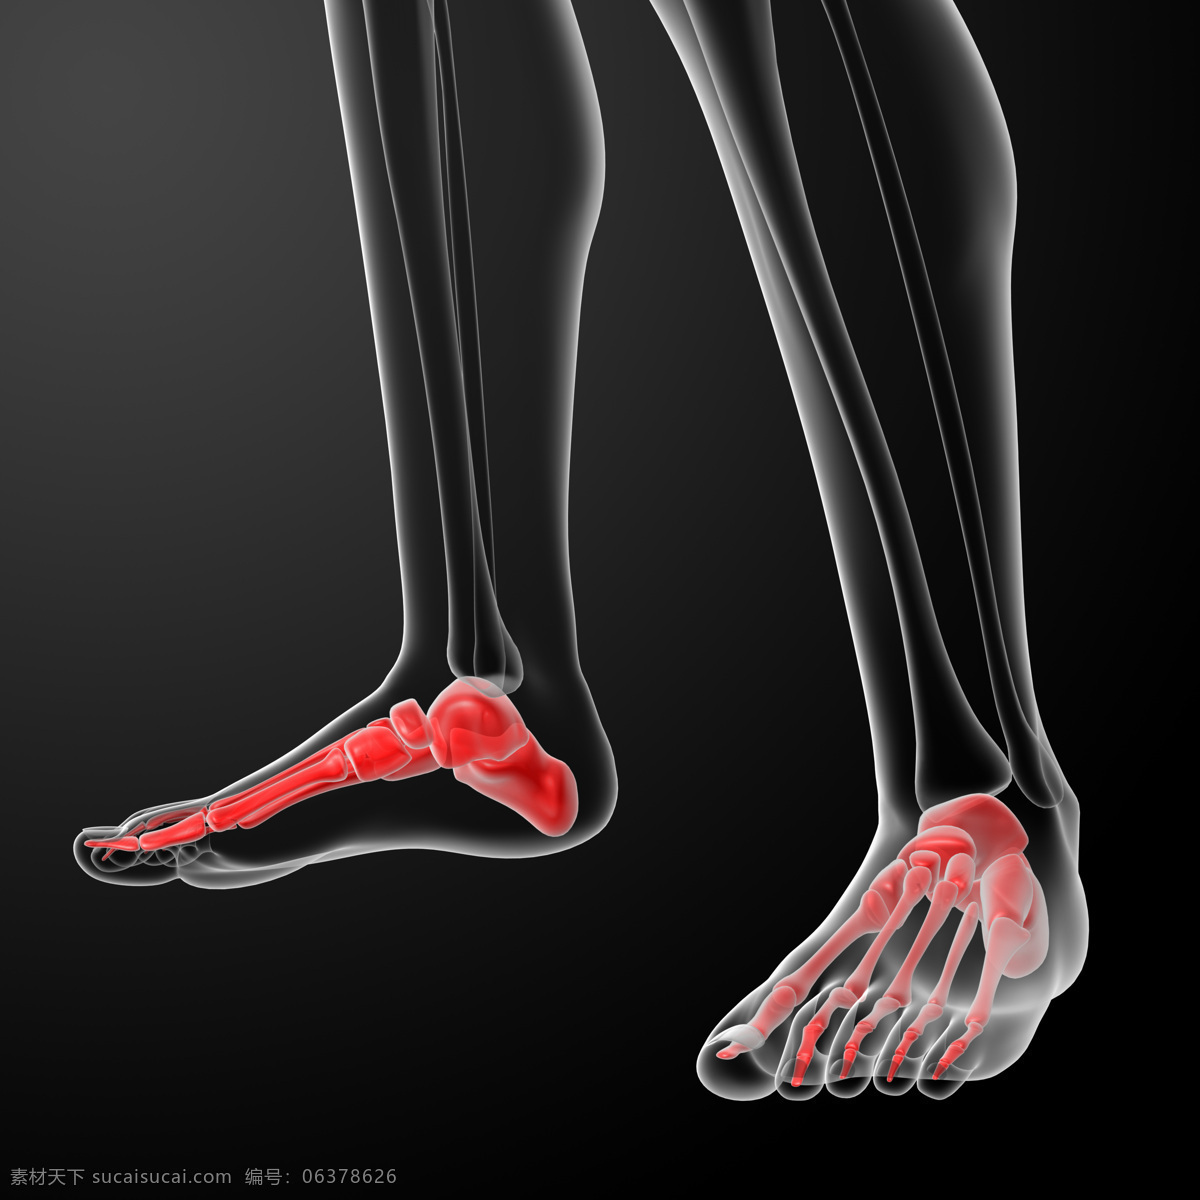 人体骨骼 人体透视图 人体动作 人体透视 手指 骨头组织 骷髅 人体 骨骼 骨架 人体器官 器官 人物图片 人体器官图 3d设计